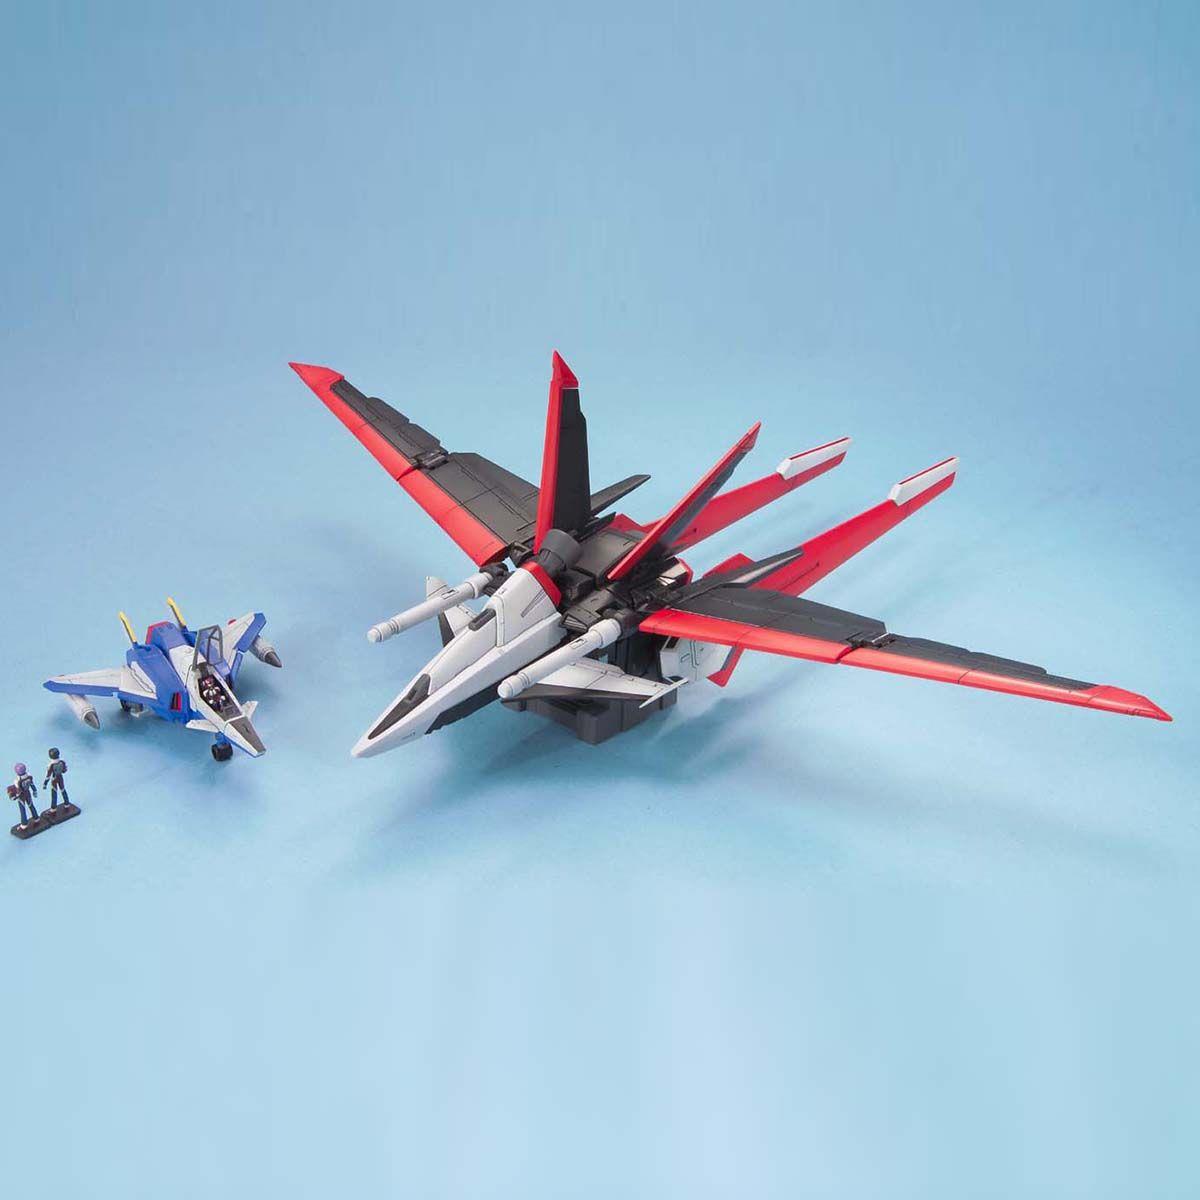 Gundam: Force Impulse Gundam MG Model